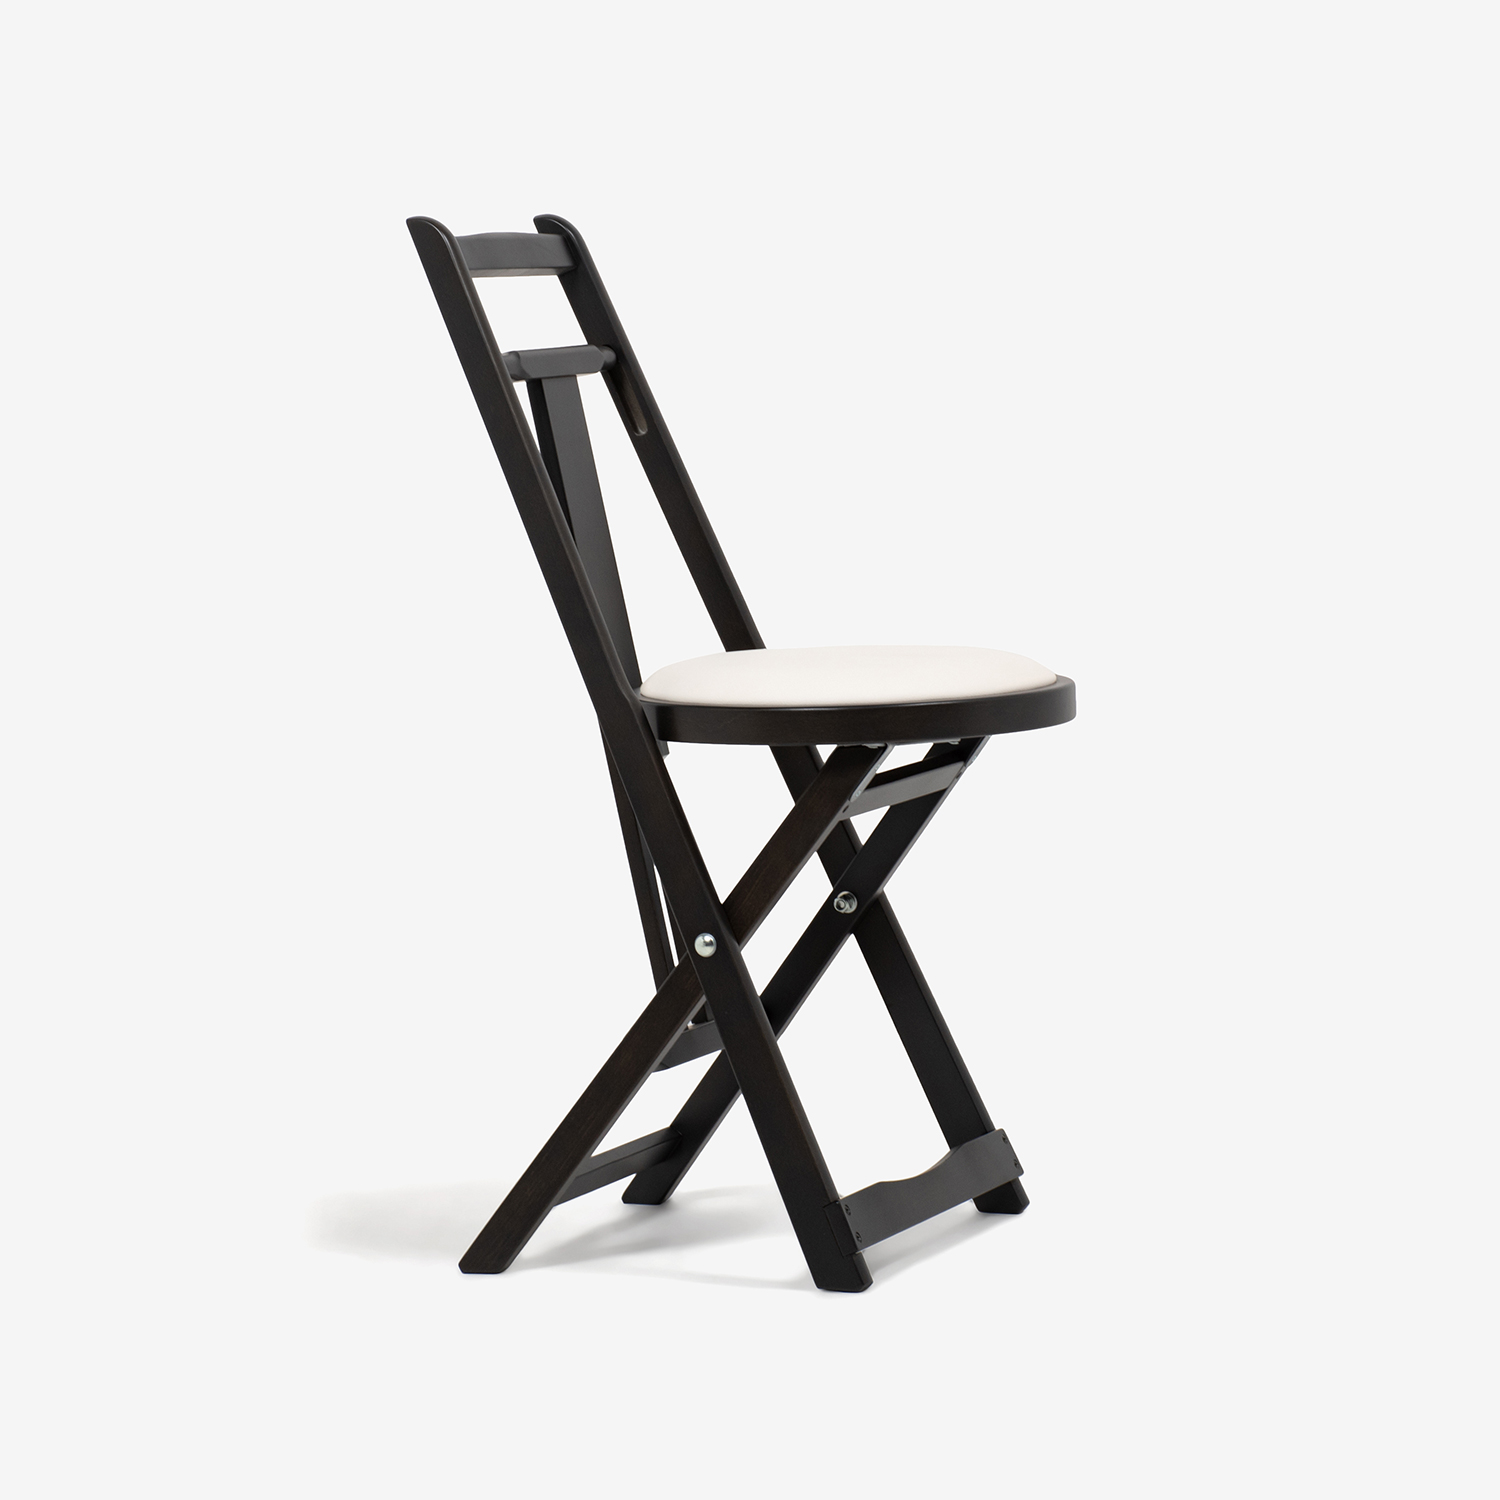 折りたたみ椅子「KC-1」木部ブナ材ダークブラウン色 座PVCアイボリー色